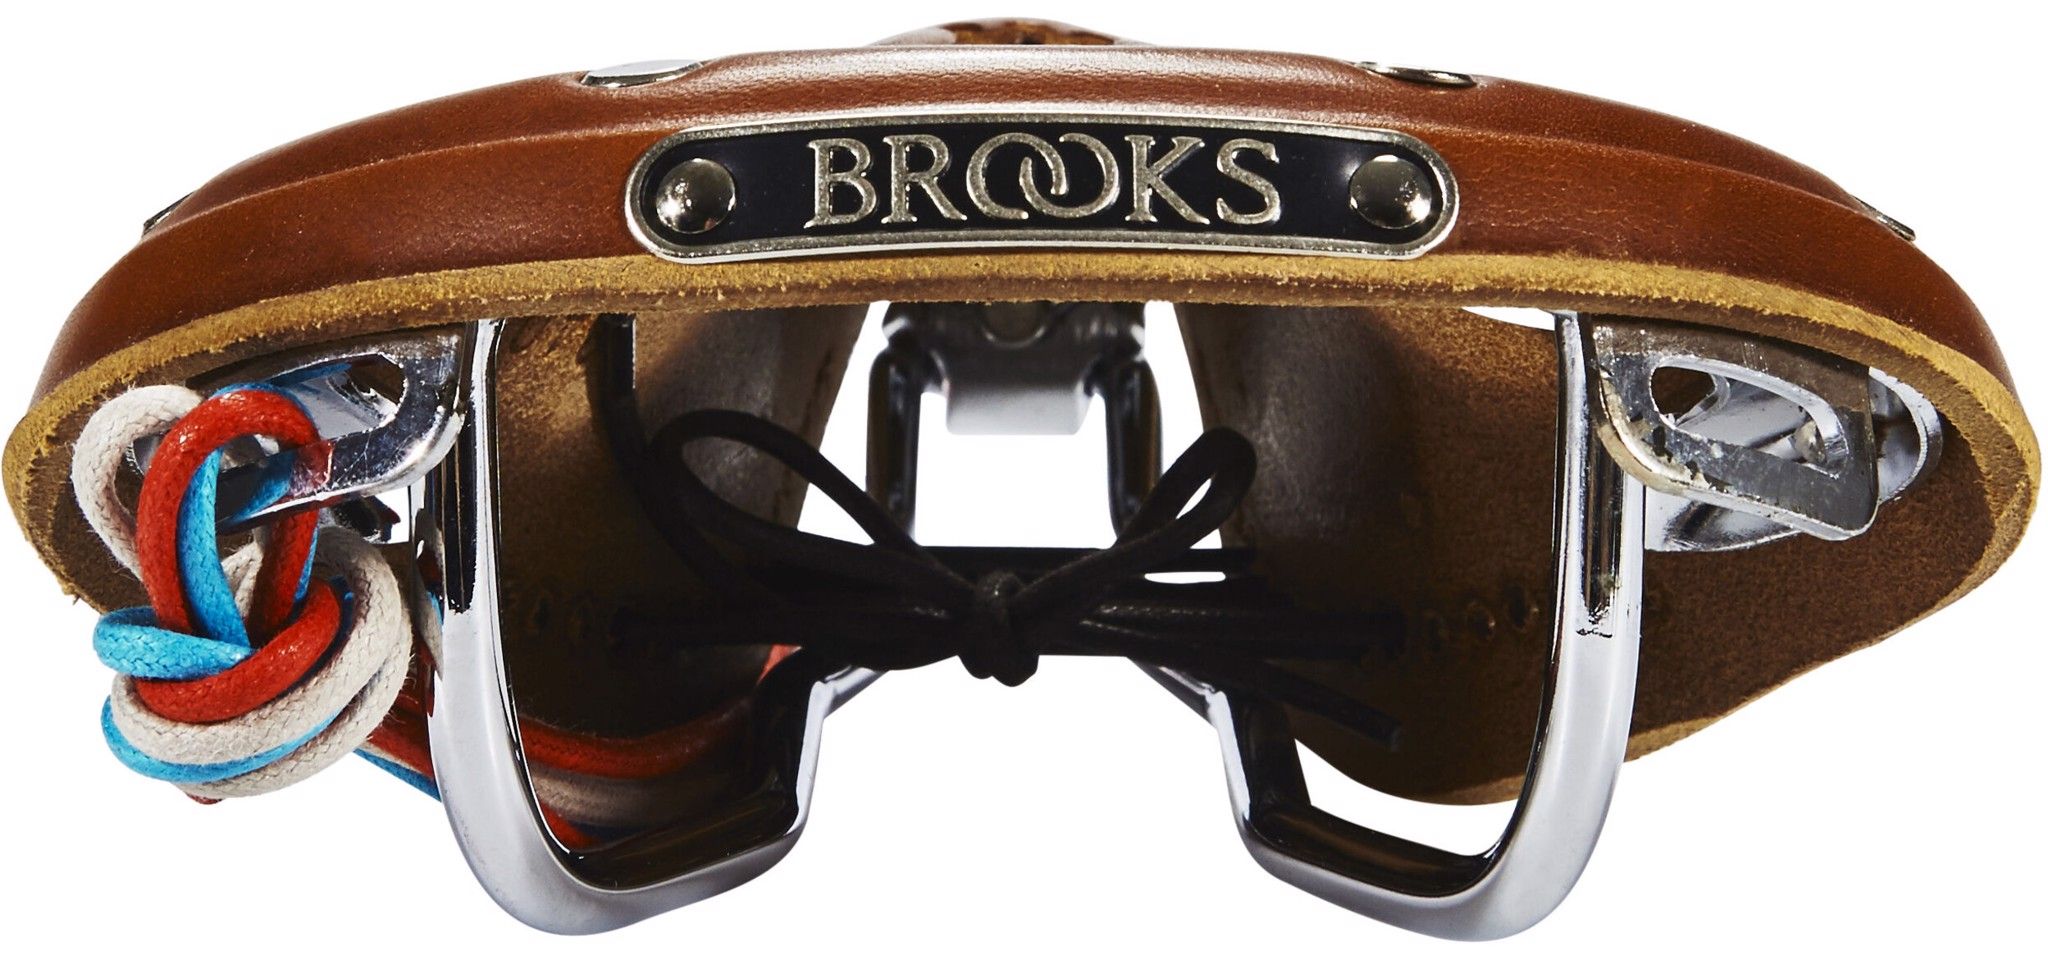  Yên xe đạp Brooks B17 Narrow Imperial Bike Saddle 